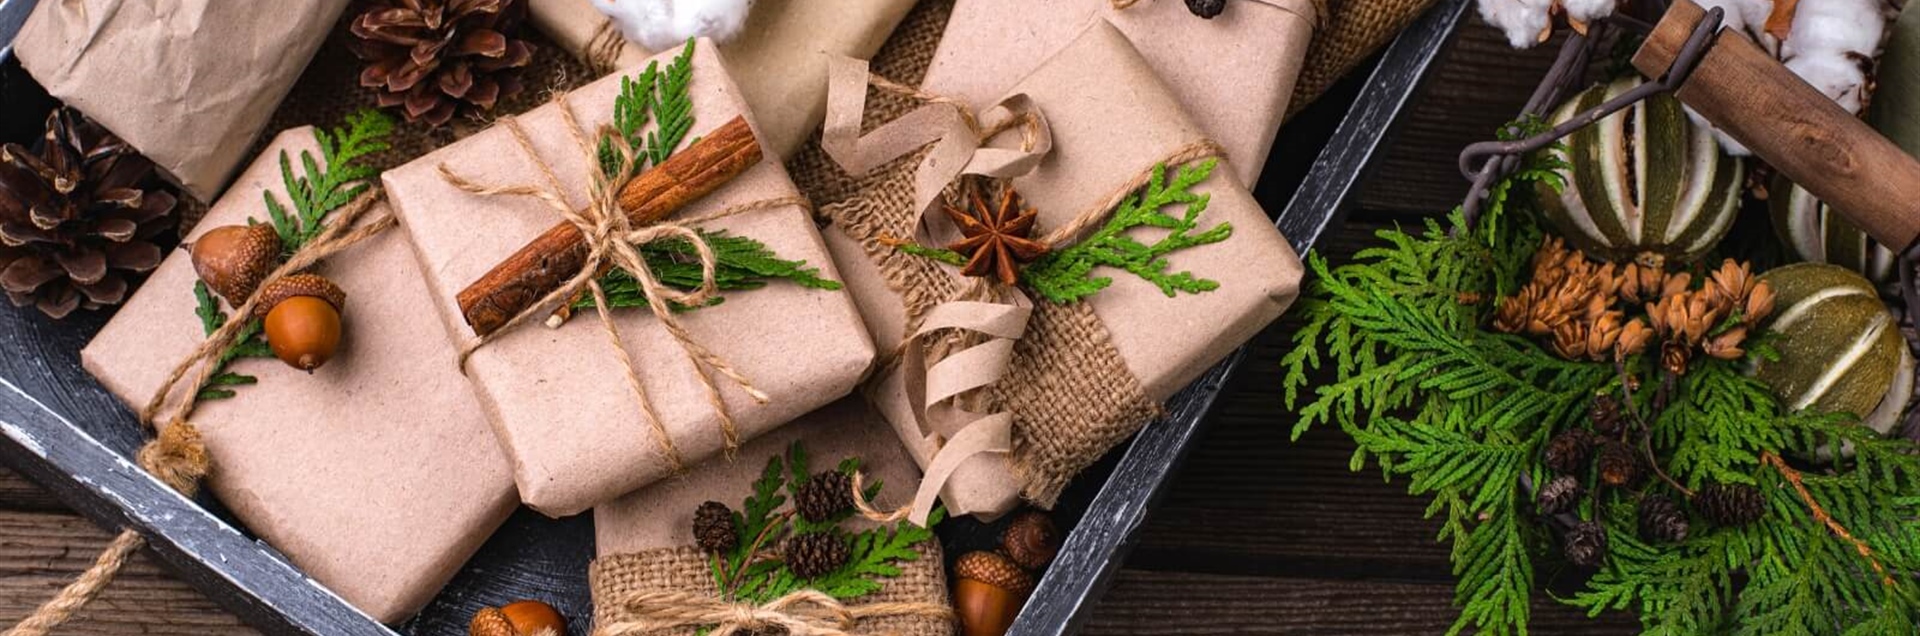 Как упаковать рождественские подарки экологично